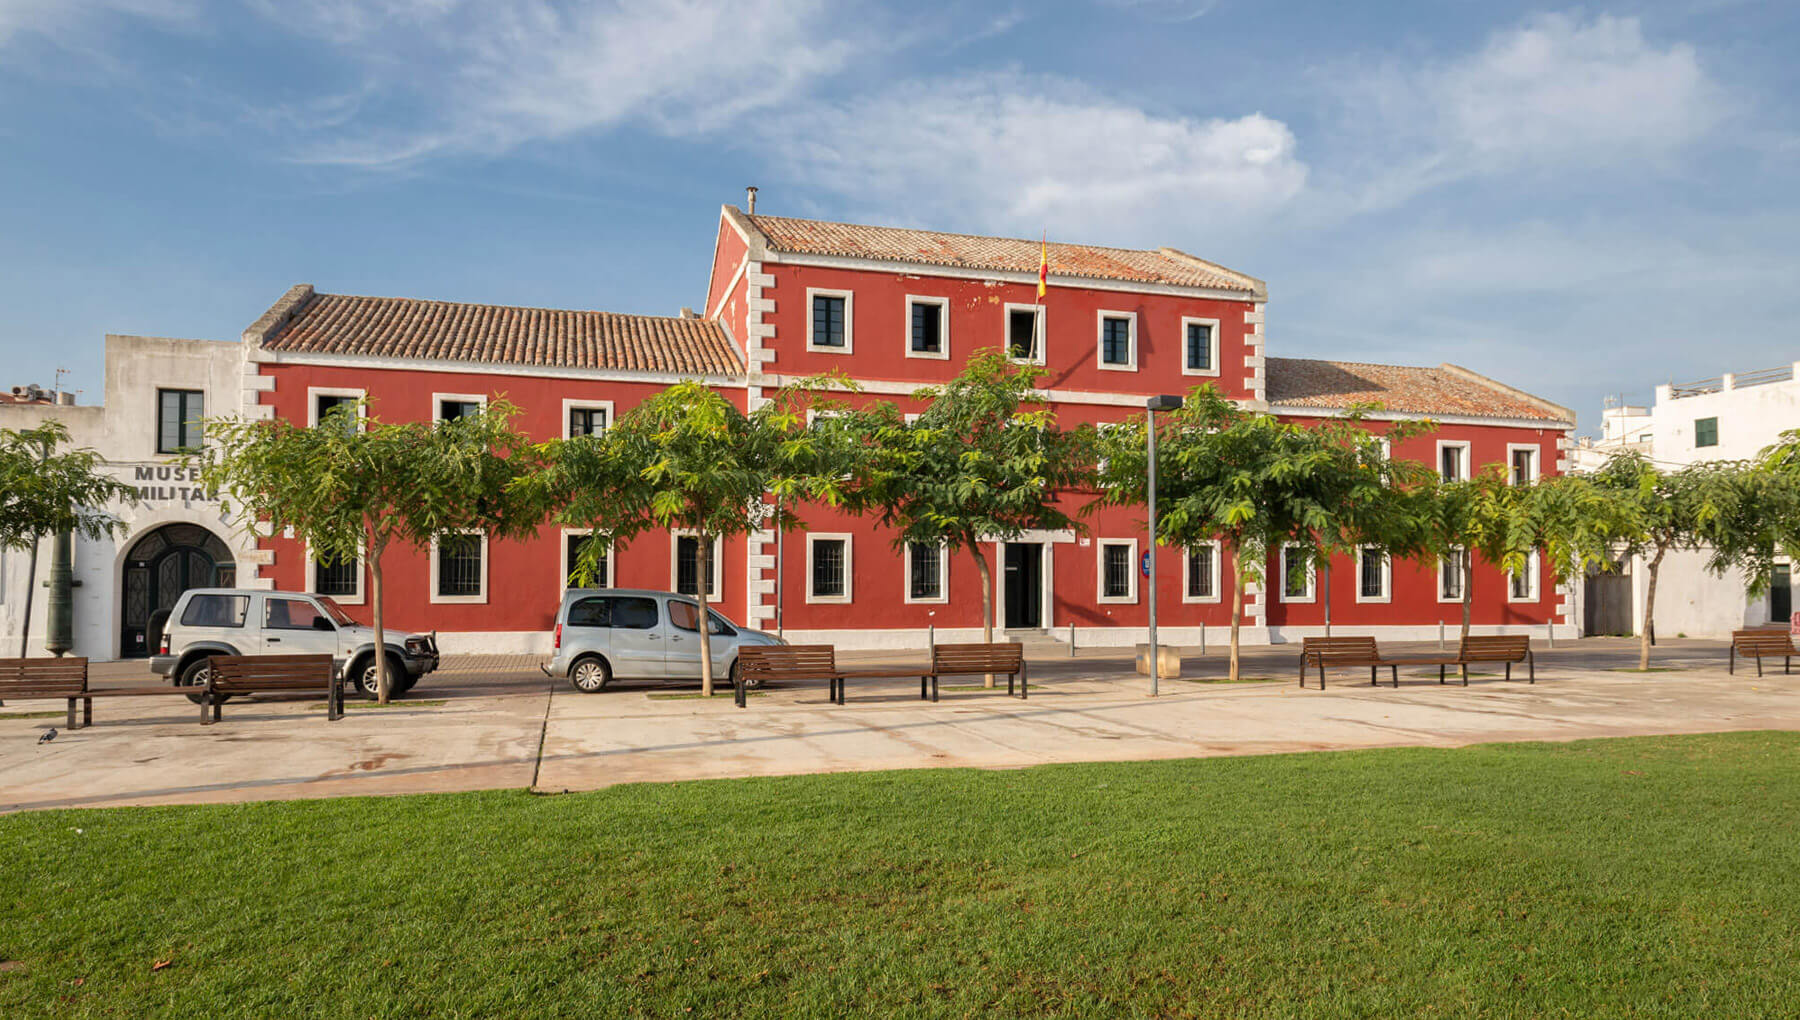 Museo Militar de Menorca | Museu Militar de Menorca